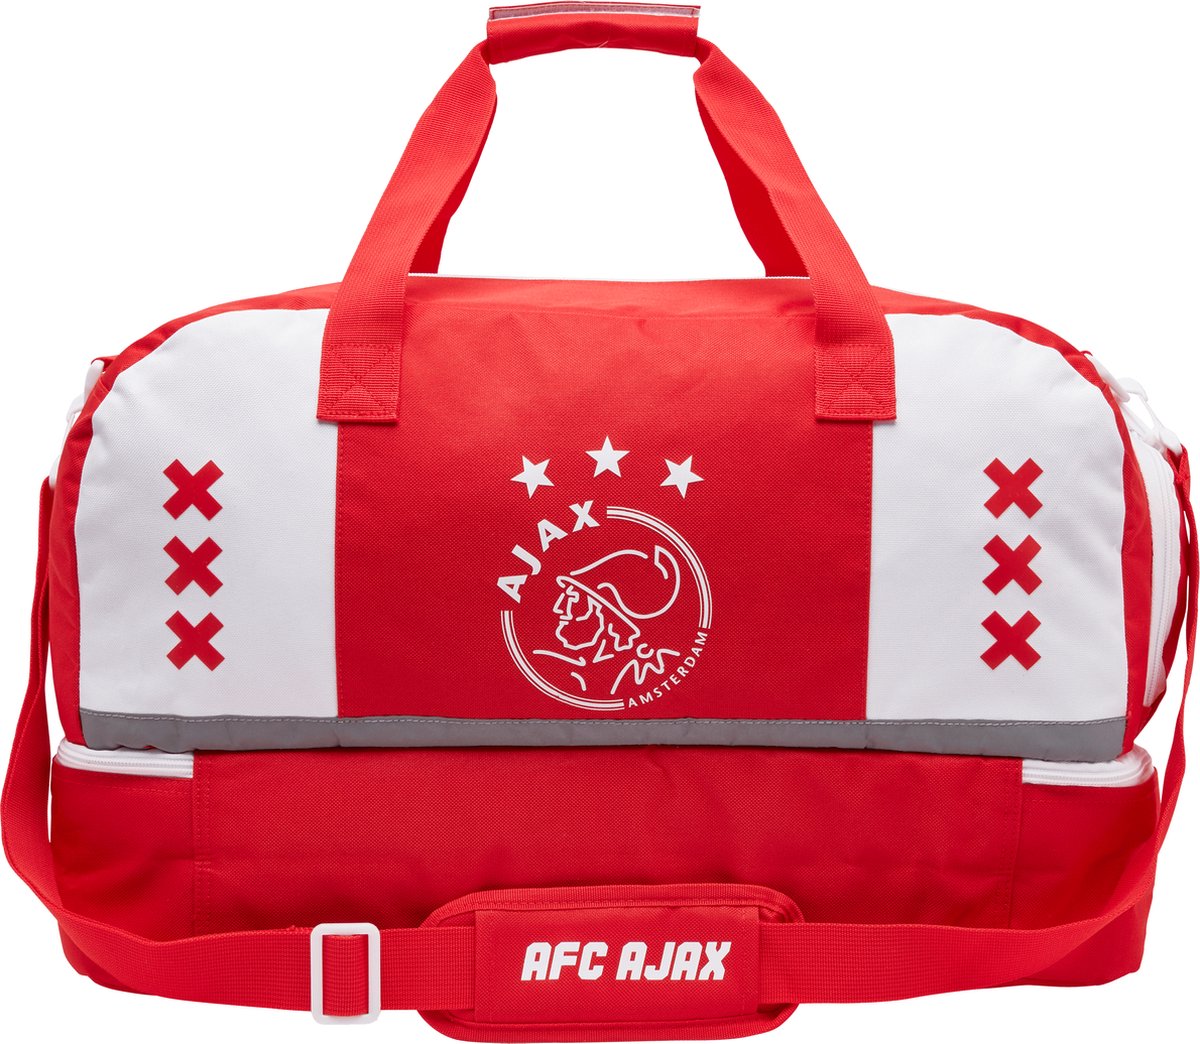 Kan weerstaan Ass persoon Sporttas met schoenenvak Ajax wit/rood/wit xxx - 53x28x35 cm - AJAX  Amsterdam | bol.com